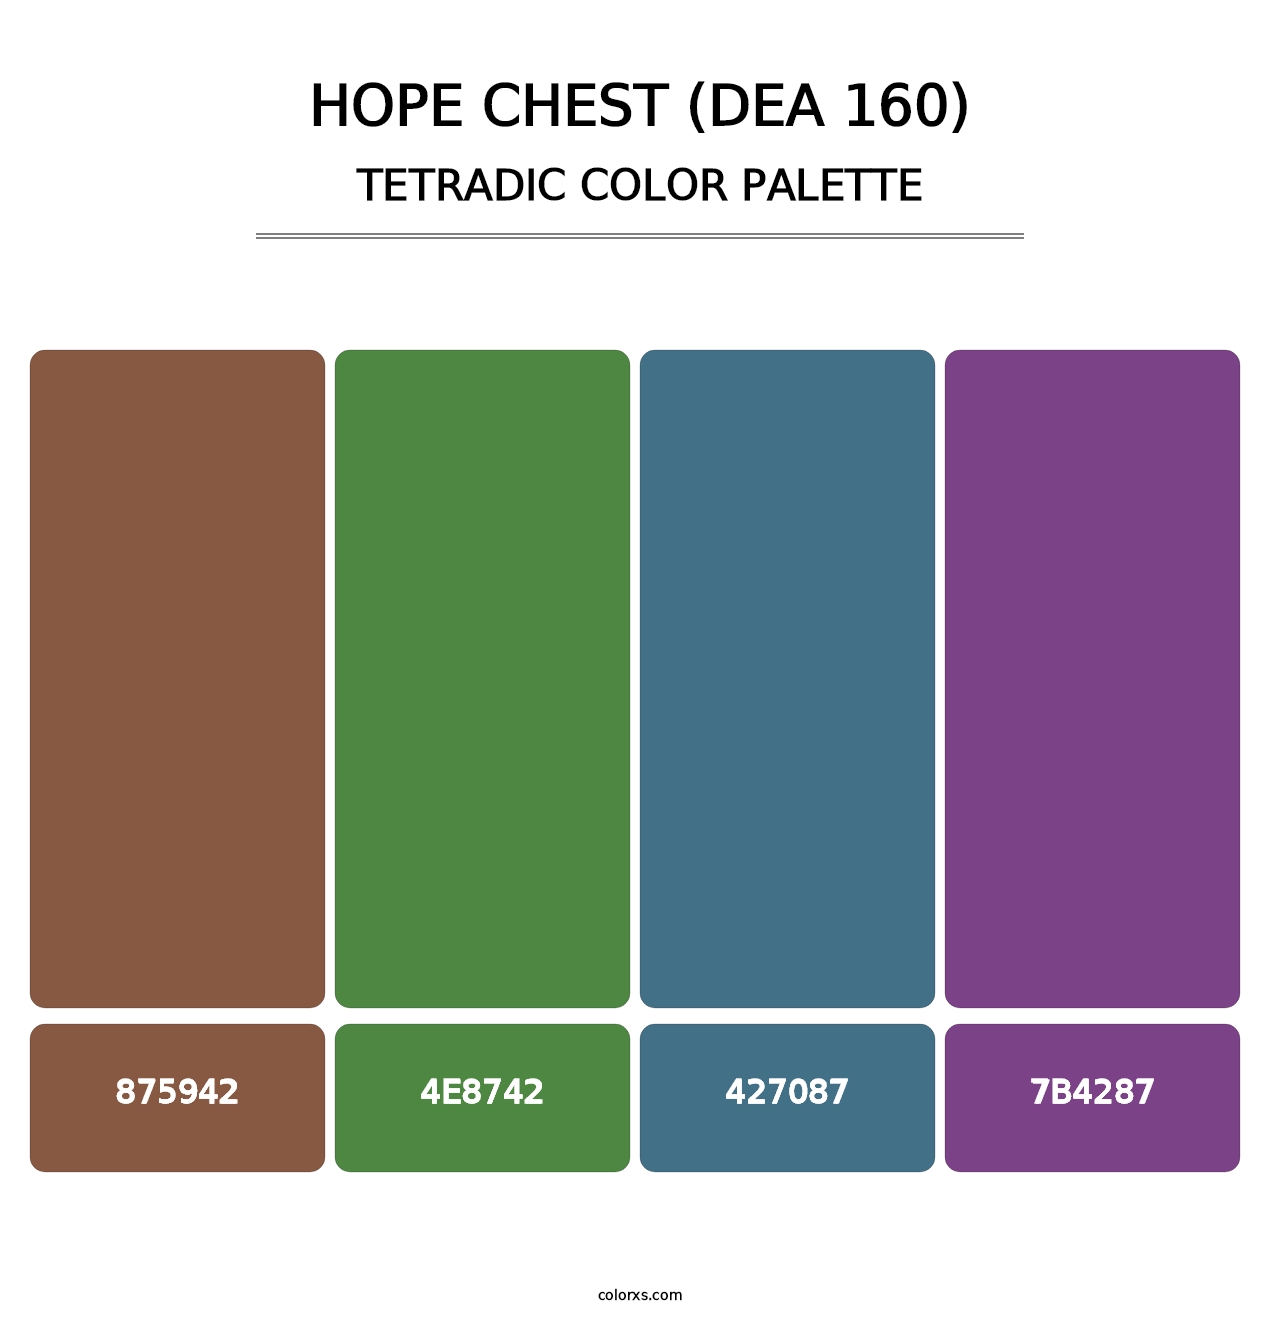 Hope Chest (DEA 160) - Tetradic Color Palette